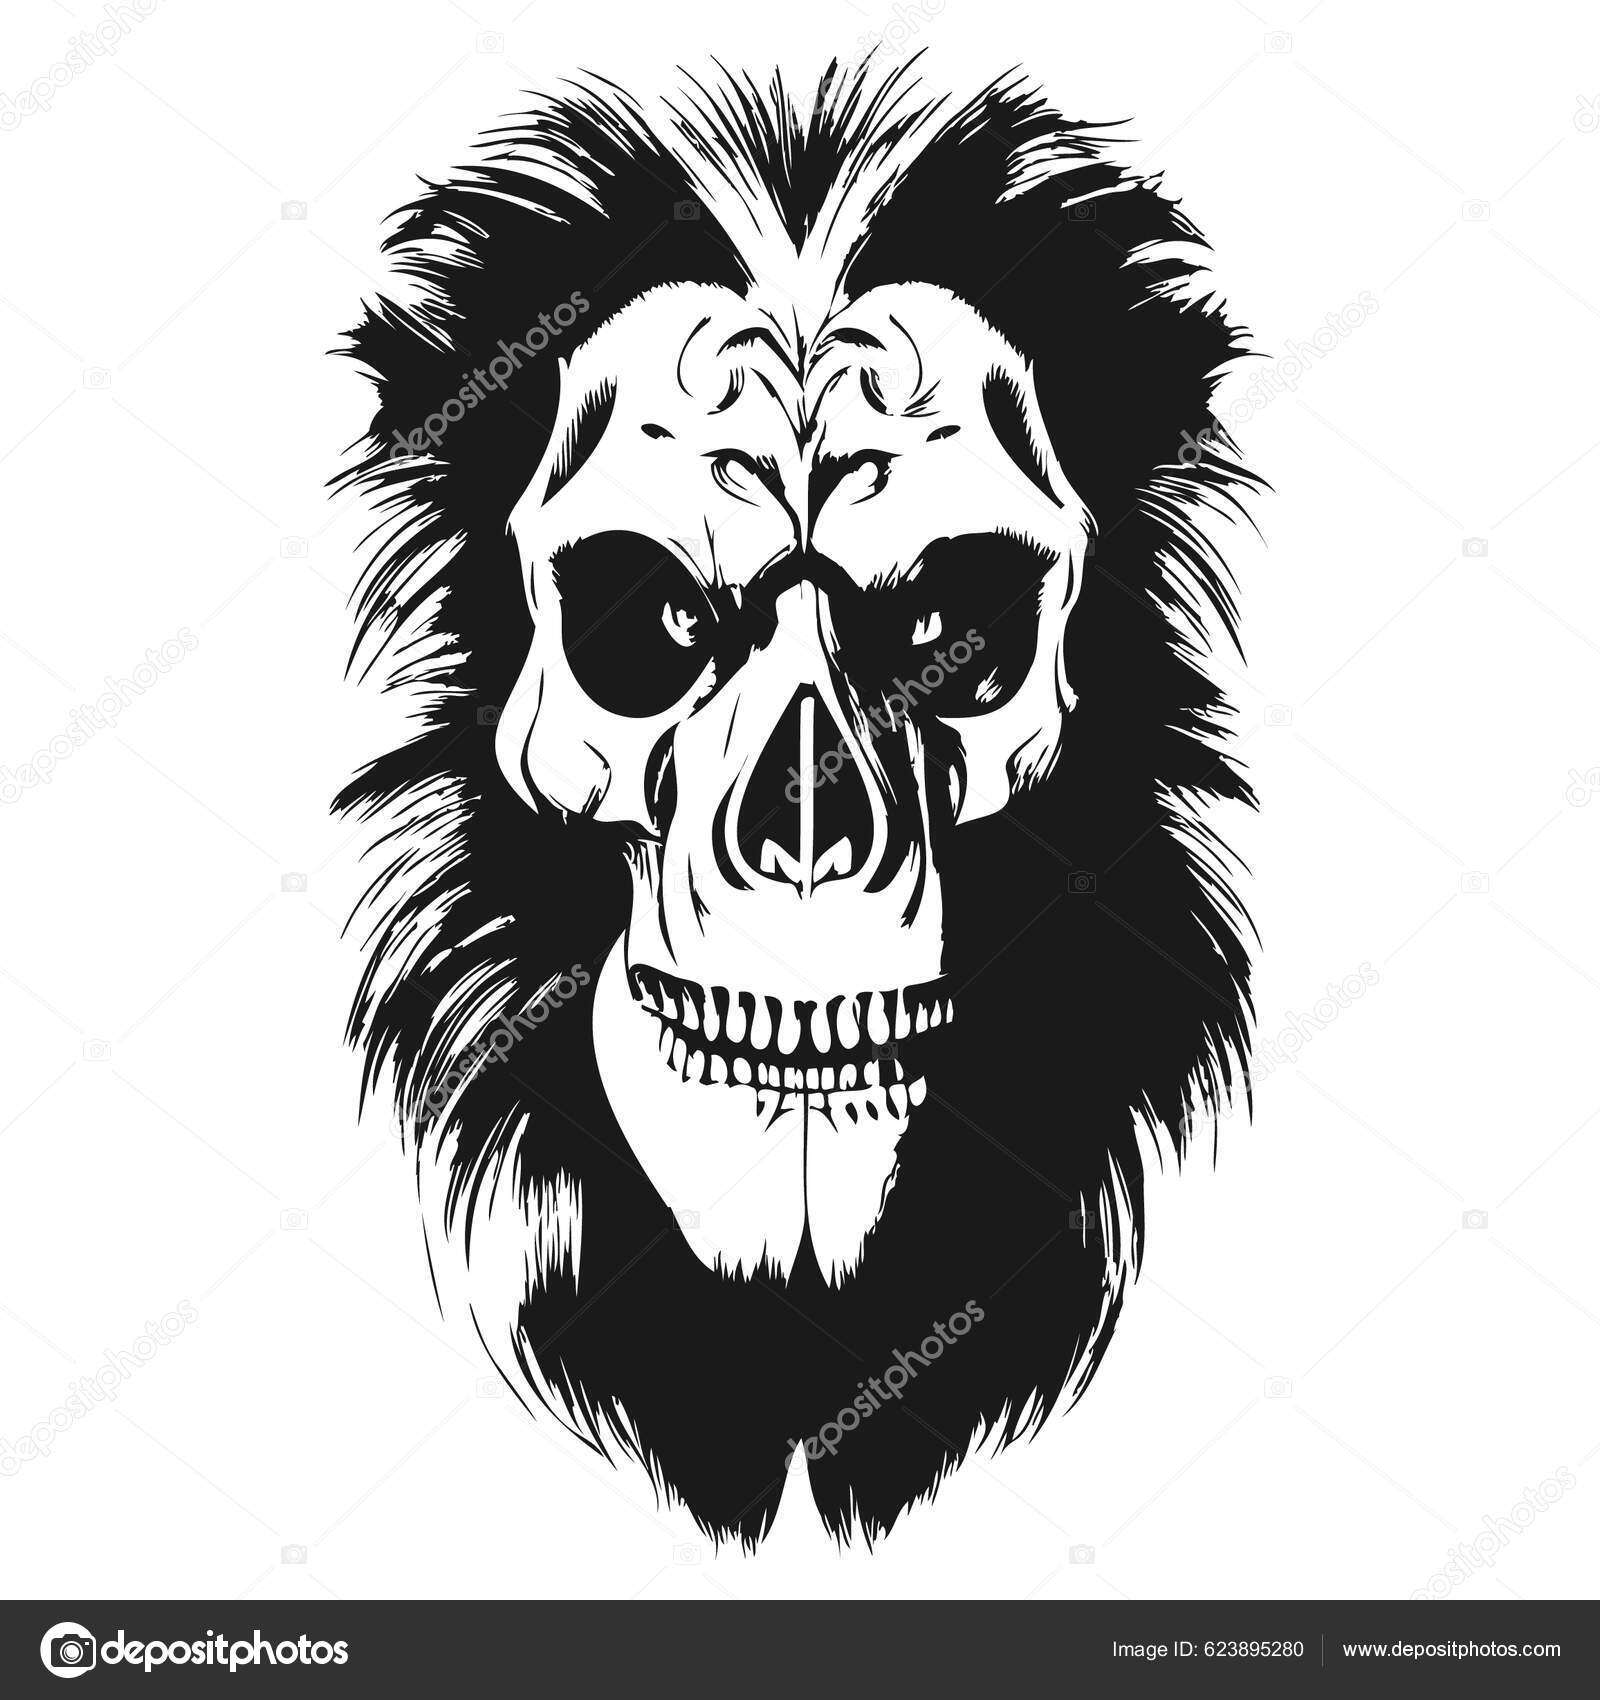 Tatuagem e t-shirt desenho preto e branco mão desenhada crânio